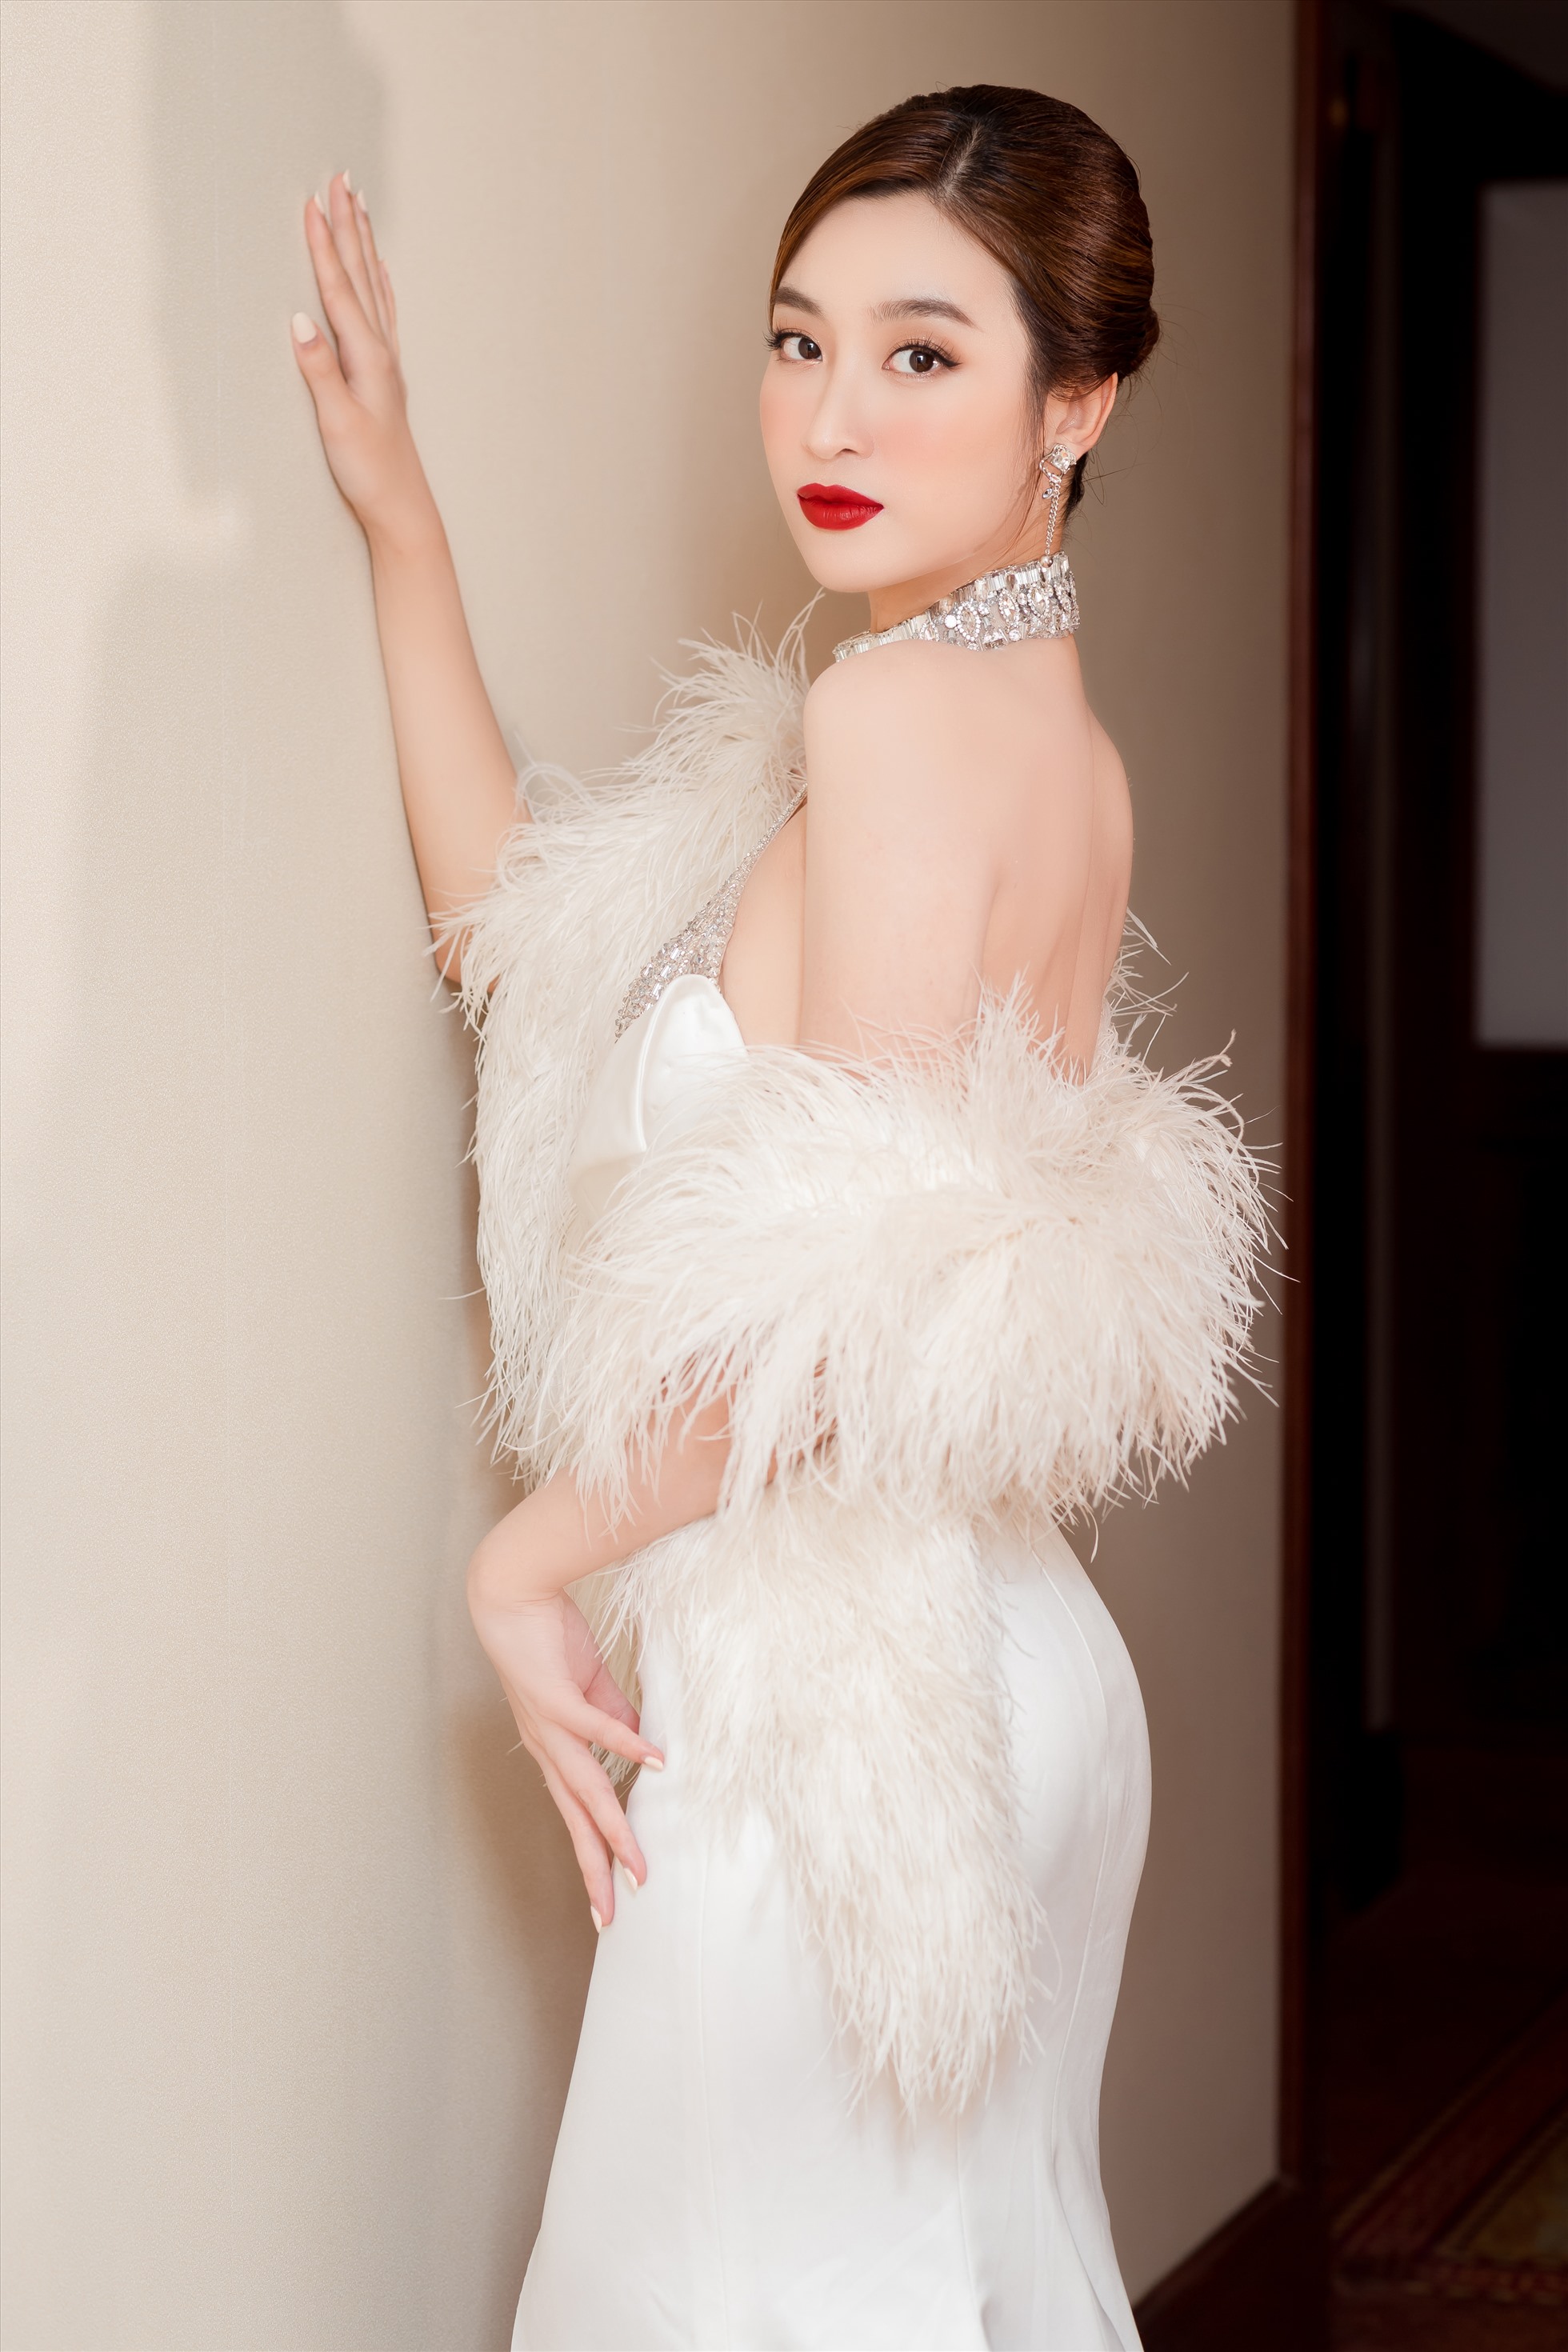 Đỗ Mỹ Linh là một trong những người đẹp ít scandal của showbiz Việt. Ảnh: NVCC.